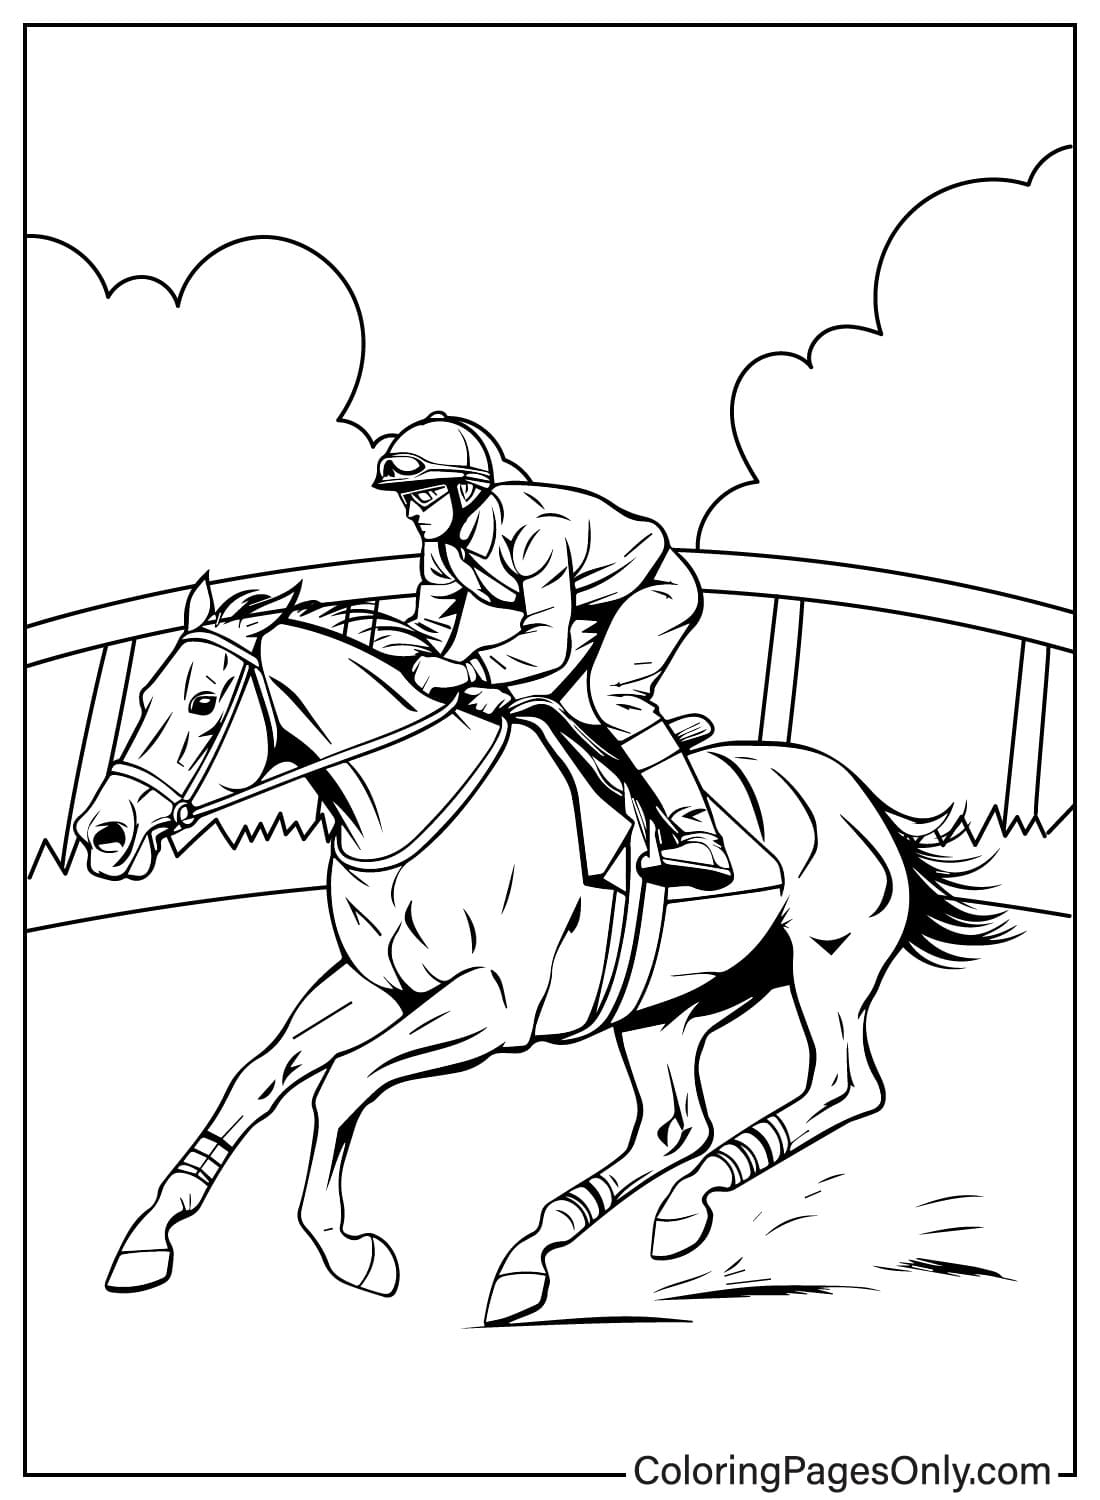 Corse di cavalli Jockey Riding Outline Vector dal Kentucky Derby